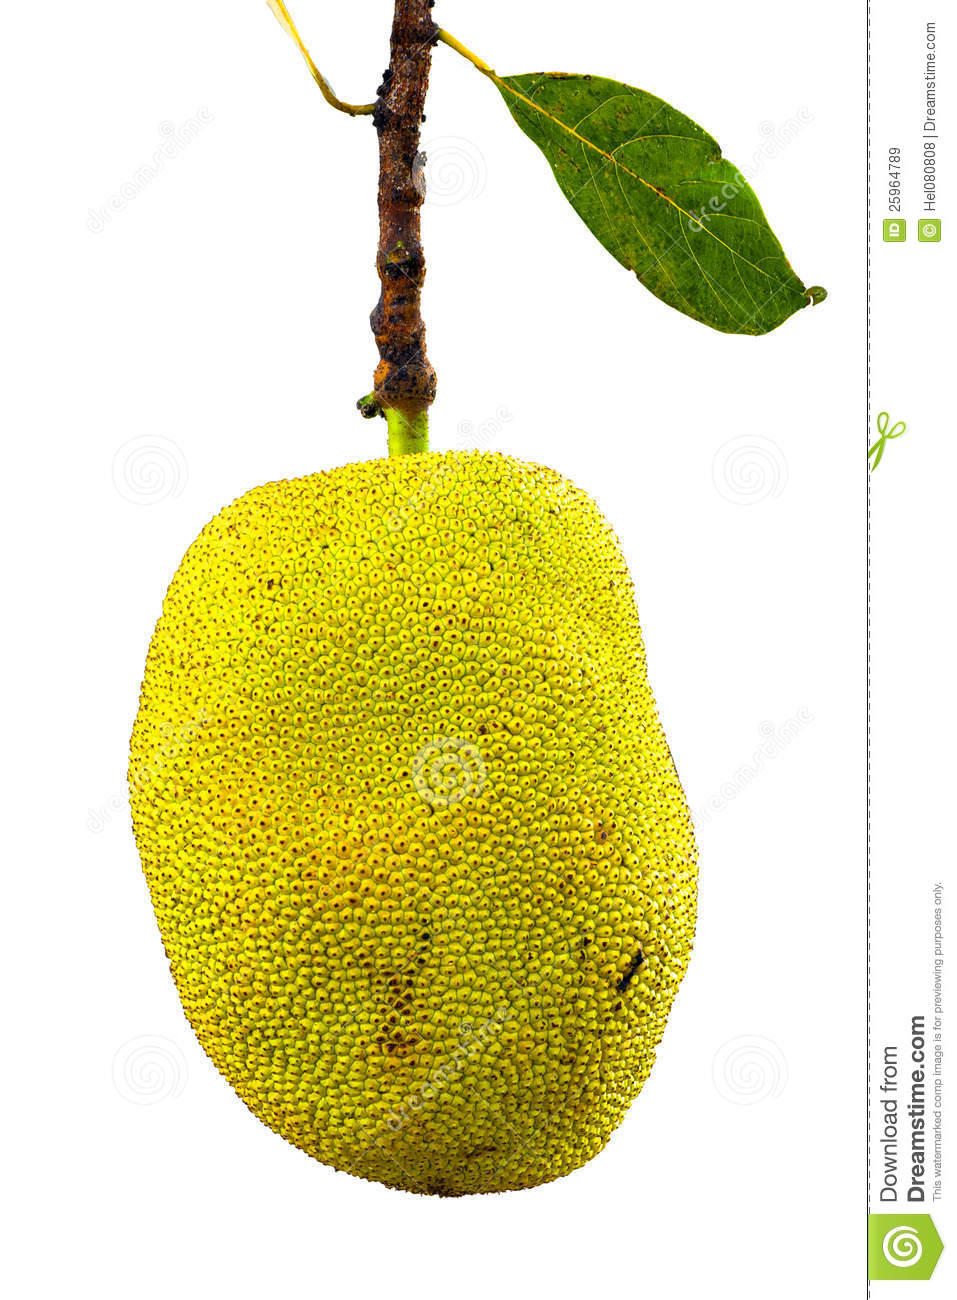 Jackfruit Royalty Free Stock Images   Image  25964789